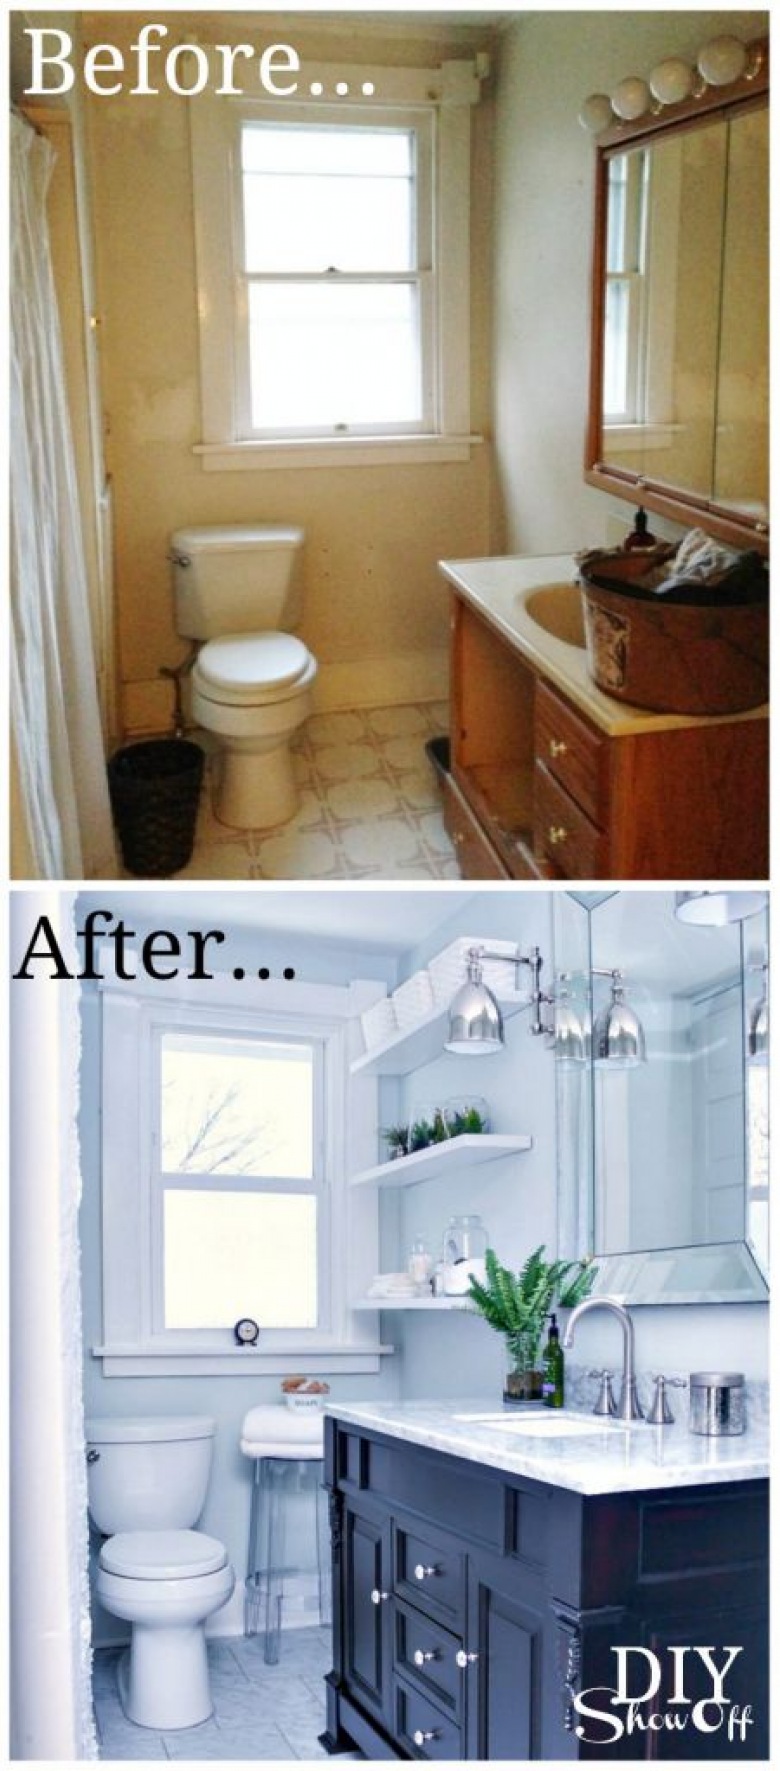 Before & after łazienki, czyli przemiana z zaniedbanego wnętrza w wyjątkowo elegancką przestrzeń (43184)